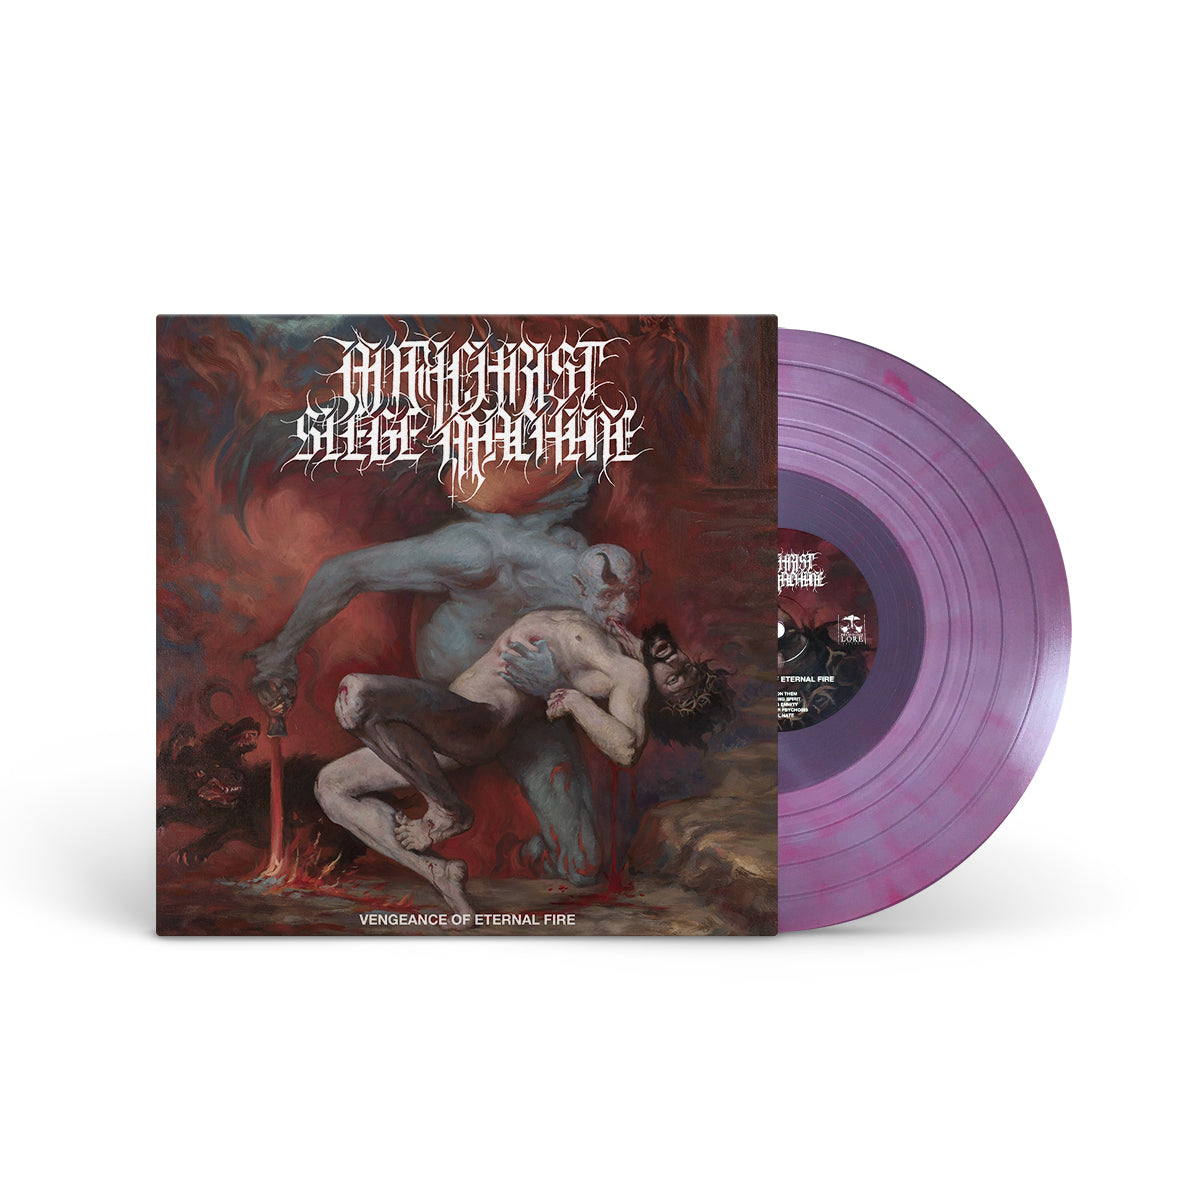 ANTICHRIST SIEGE MACHINE "Vengeance Of Eternal Fire" LP